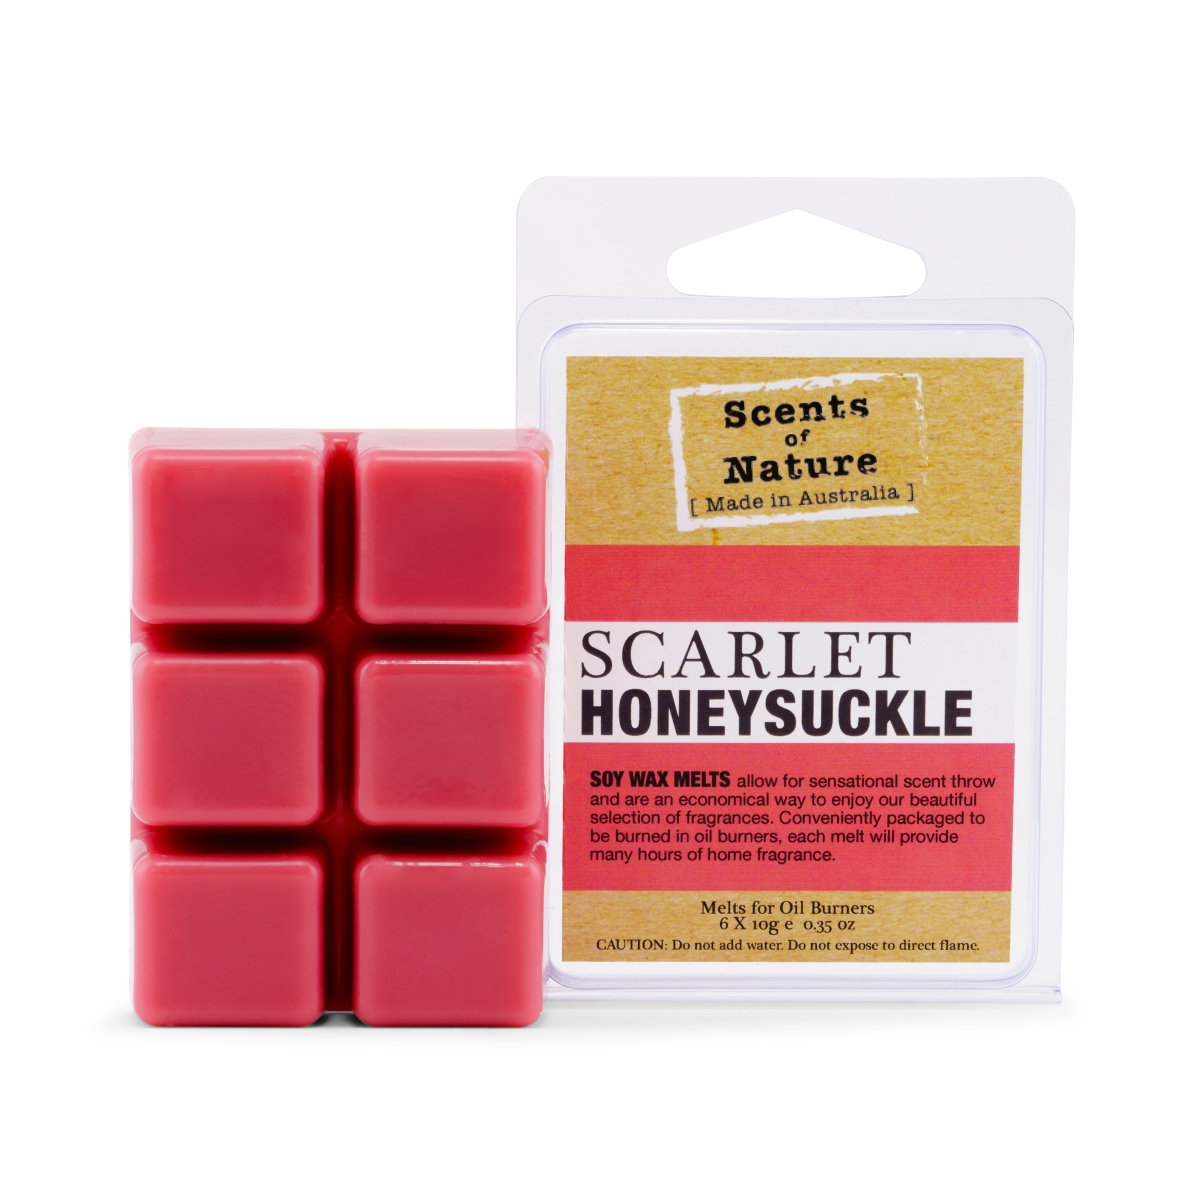 Tilley Scarlet Honeysuckle Square Soy Wax Melts 60g